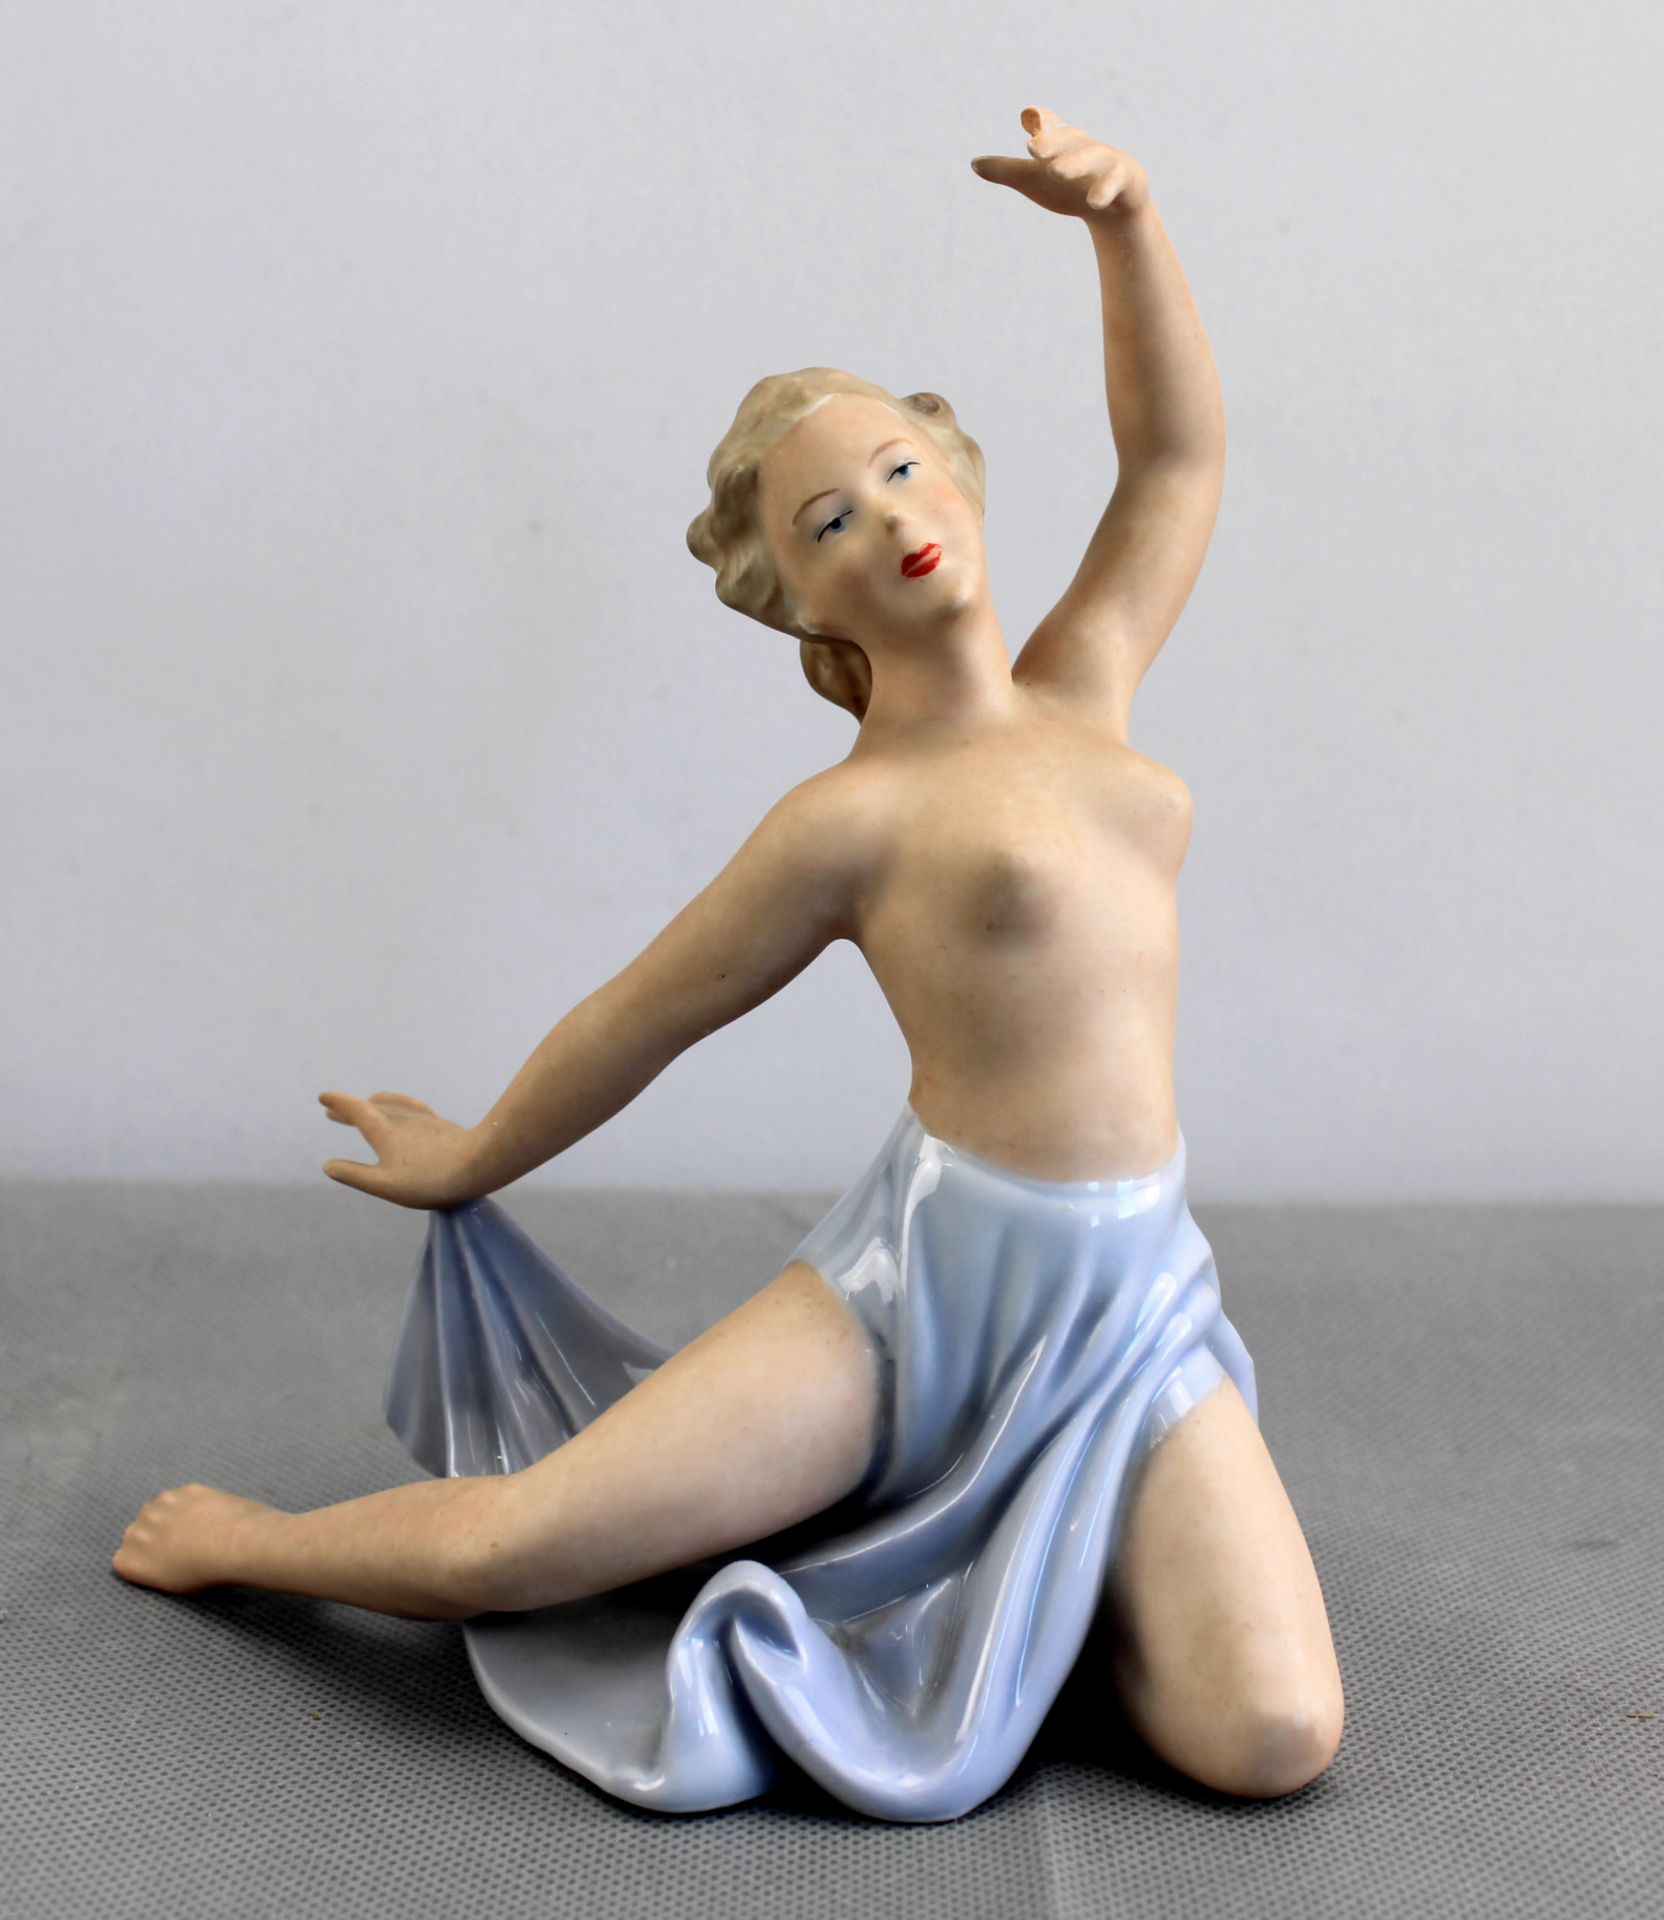 Porzellanfigur, Tänzerin in schwingendem Rock, Gerold & Co. Tettau, Mod. 6446